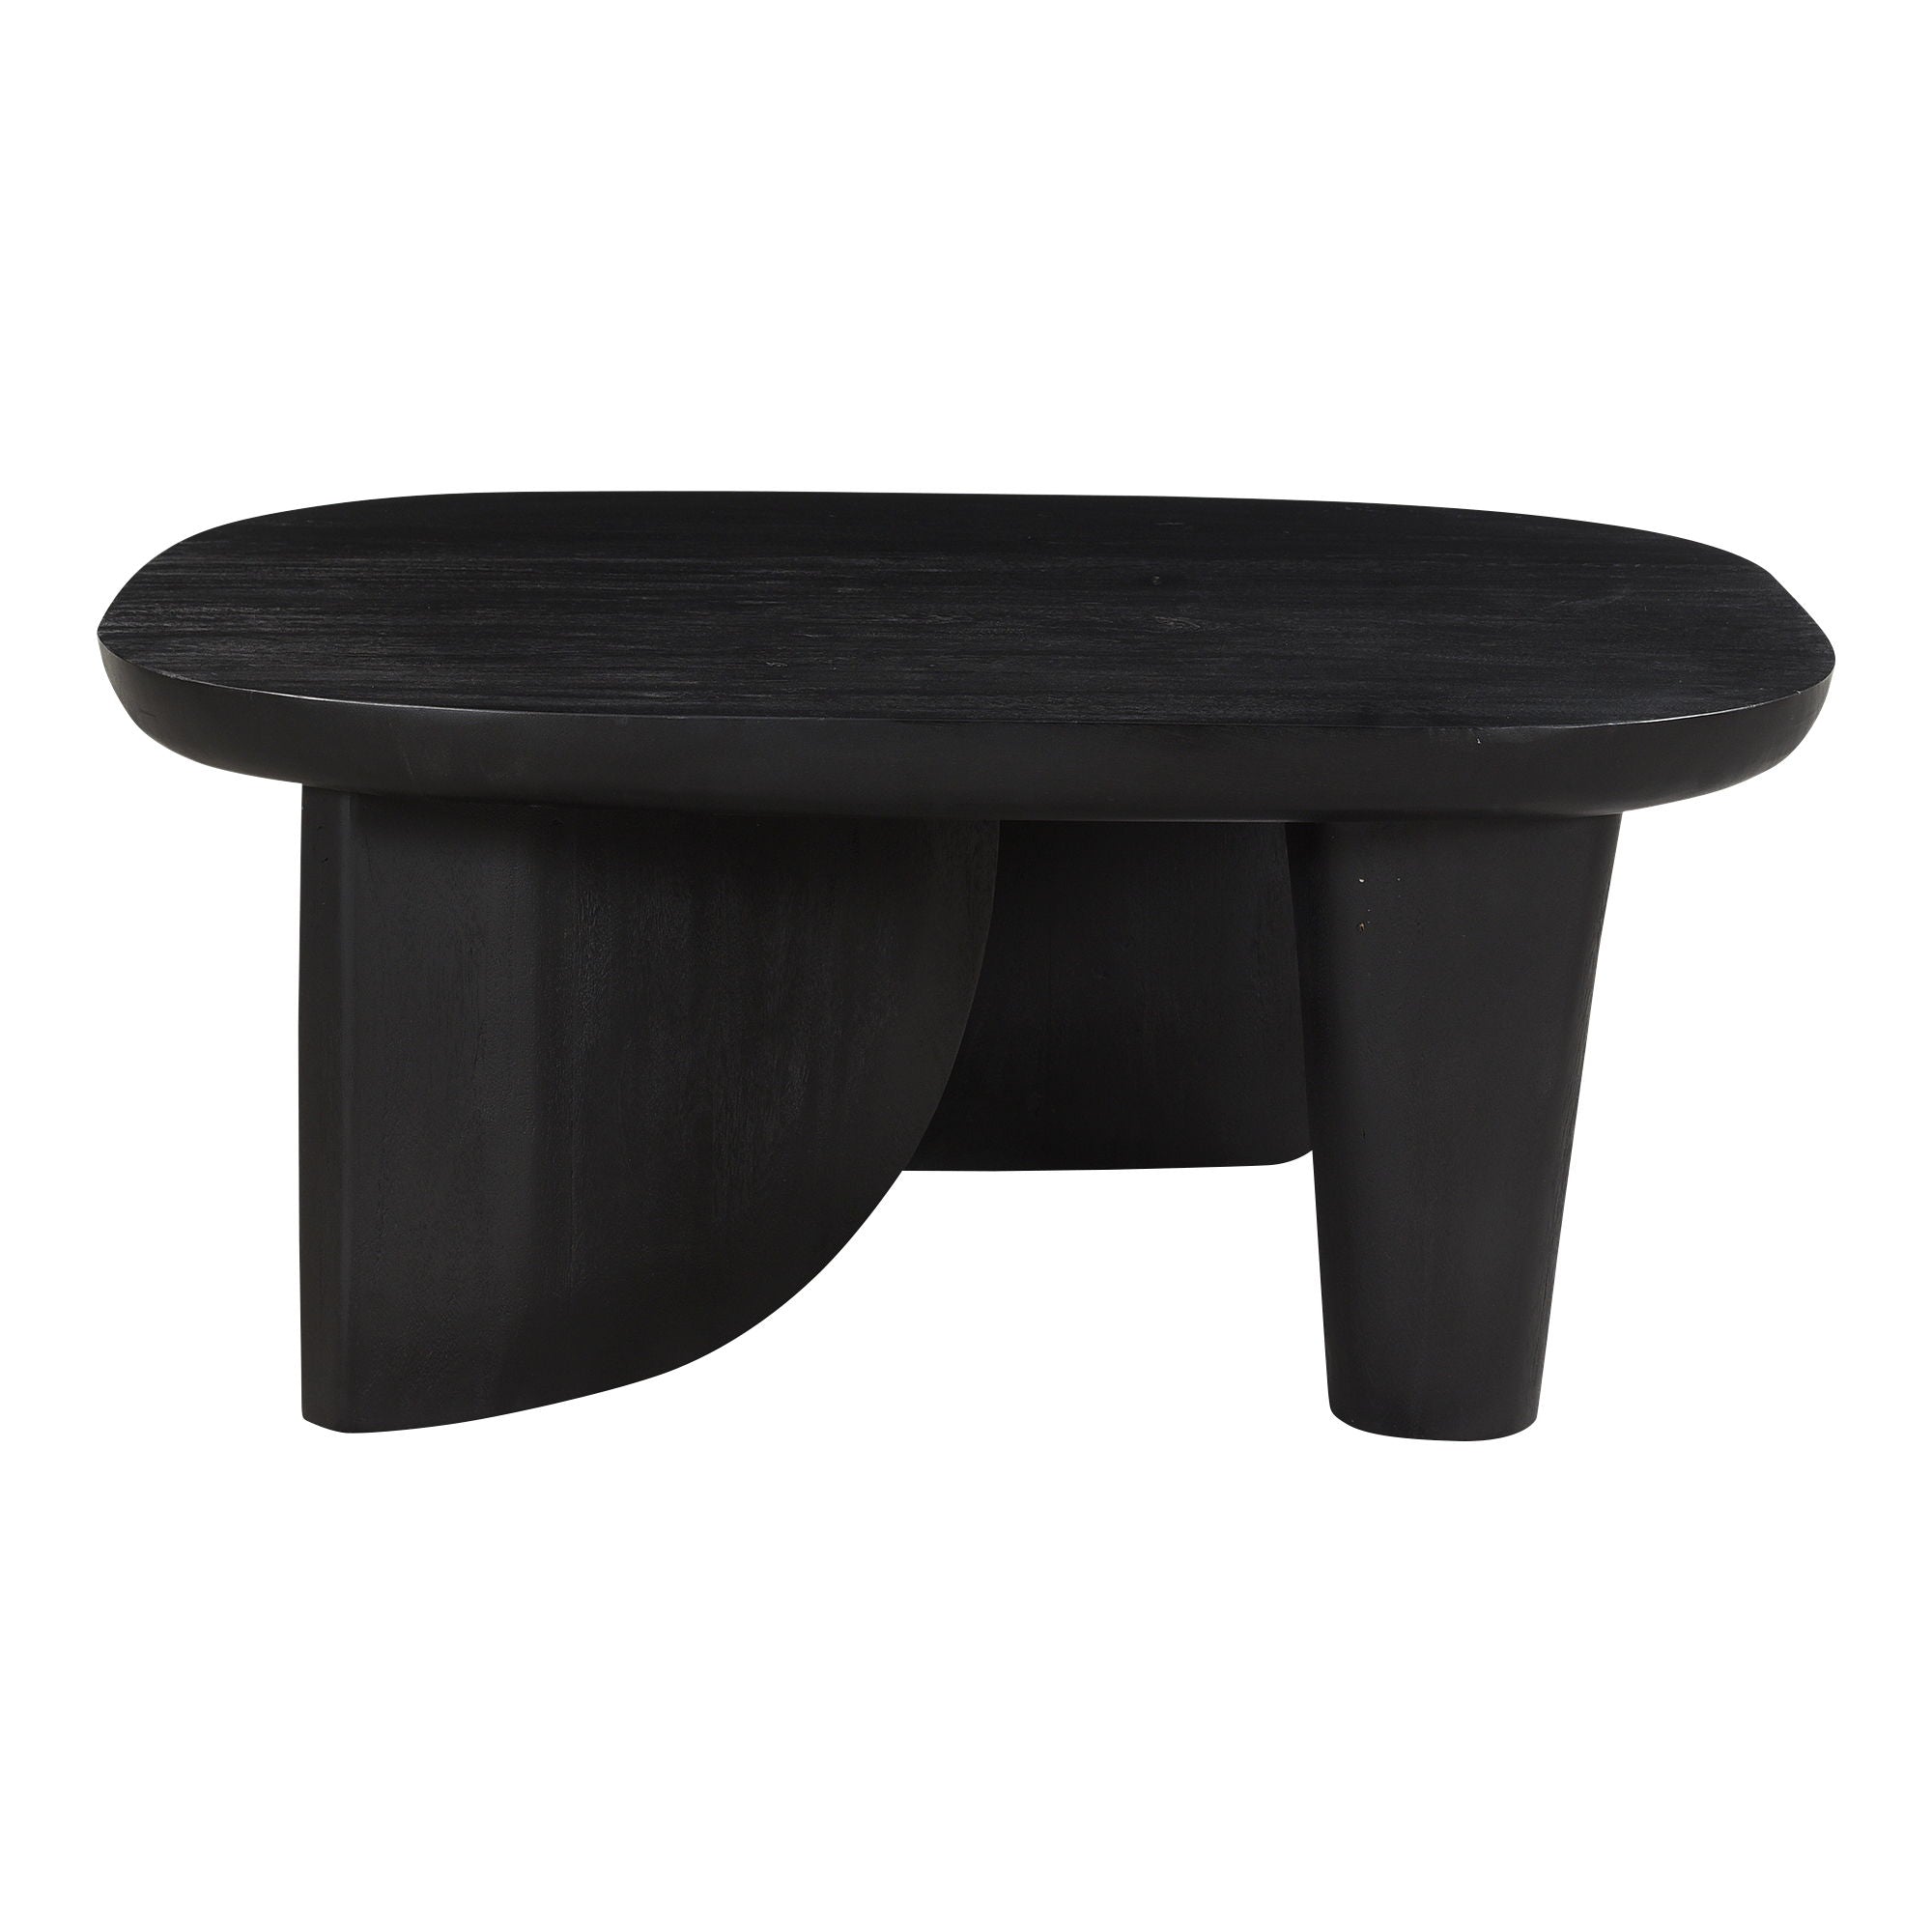 Era - Coffee Table - Black Wood